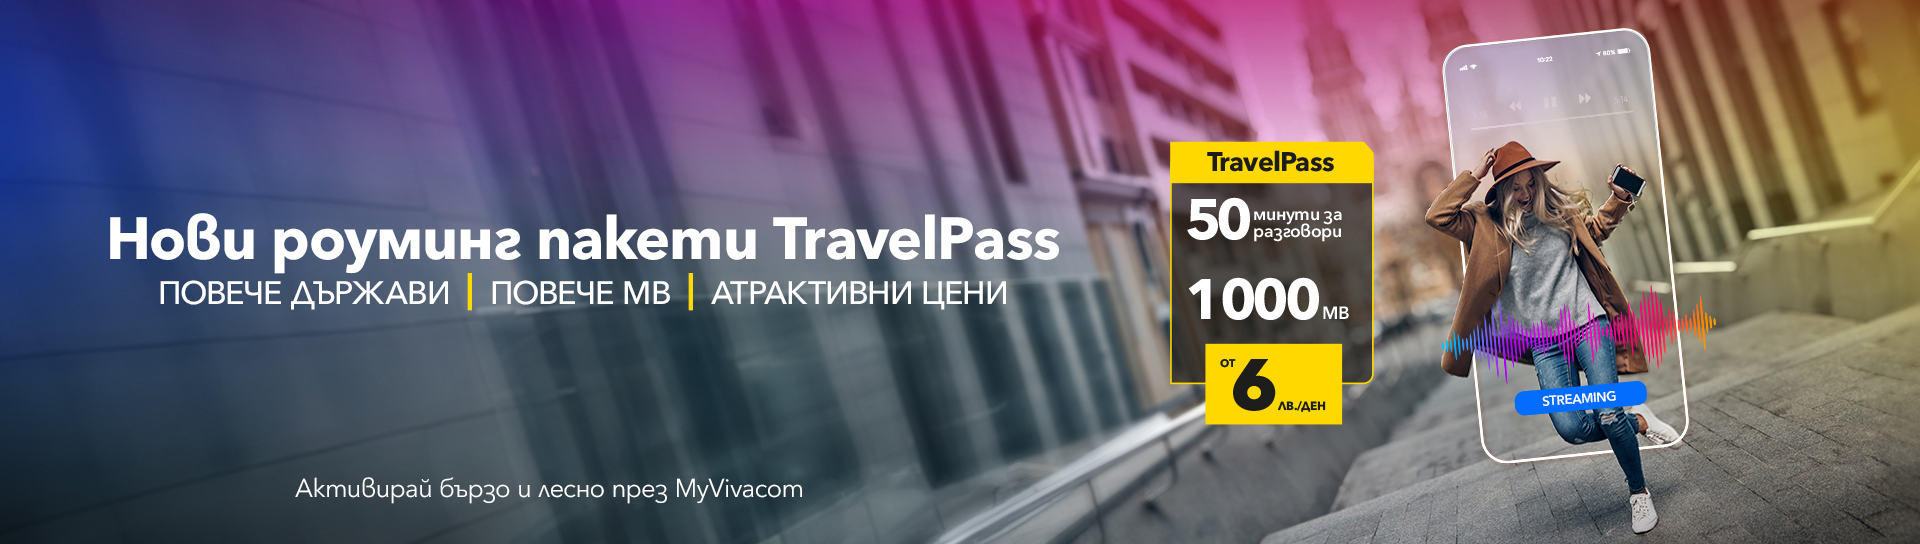 Пътувай свободно с TravelPass от Vivacom и се наслади на безгрижно пътуване.